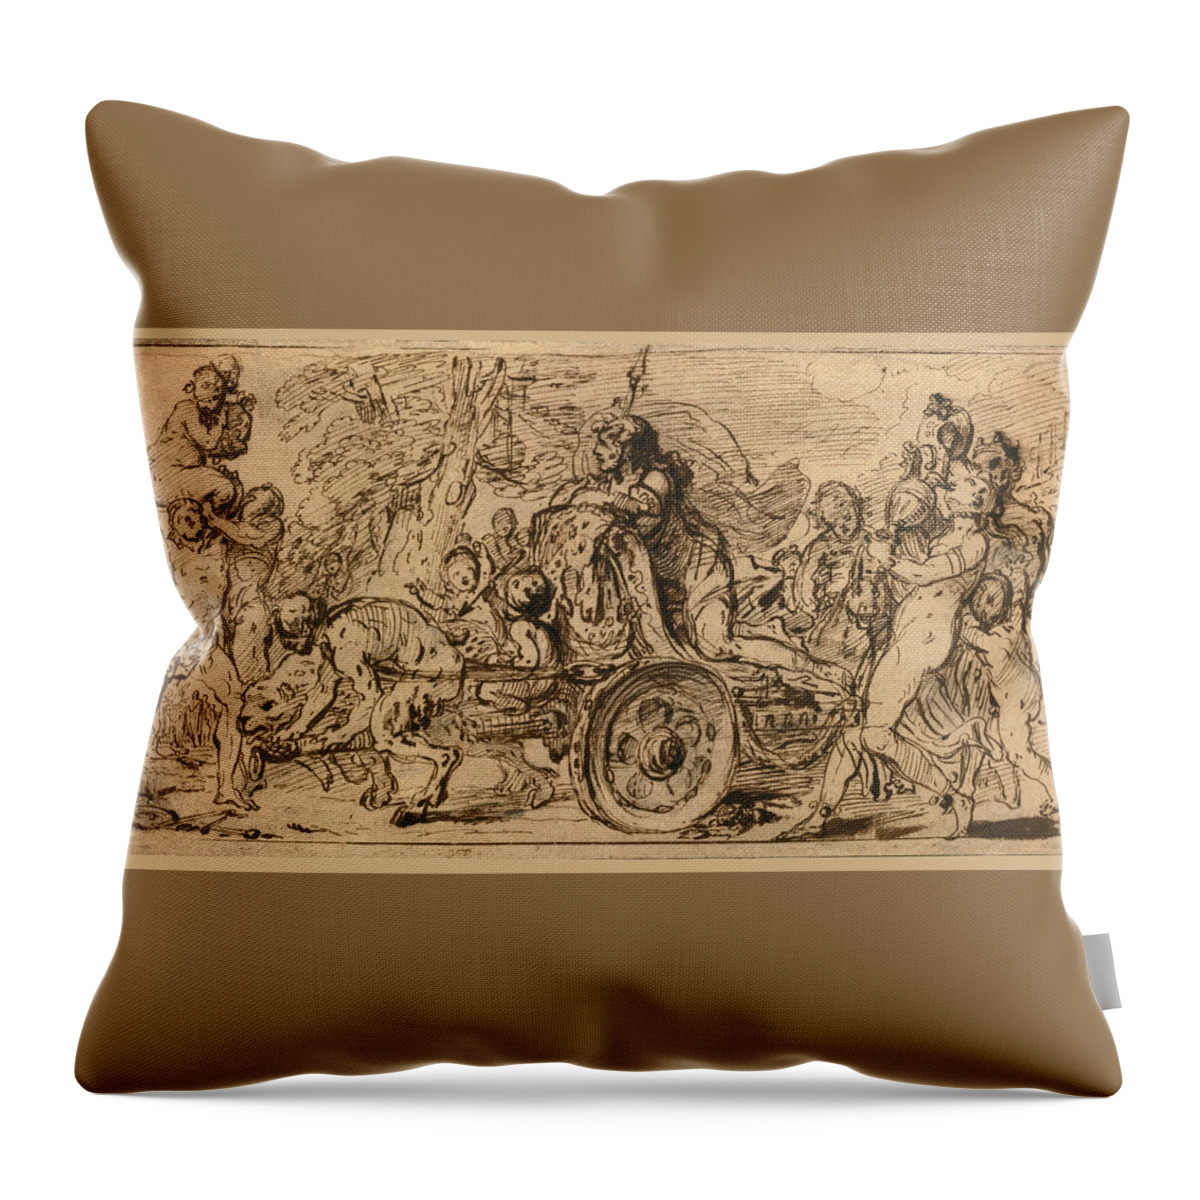 Gabriel De Saint-aubin Throw Pillow featuring the drawing The Triumph of Bacchus by Gabriel de Saint-Aubin